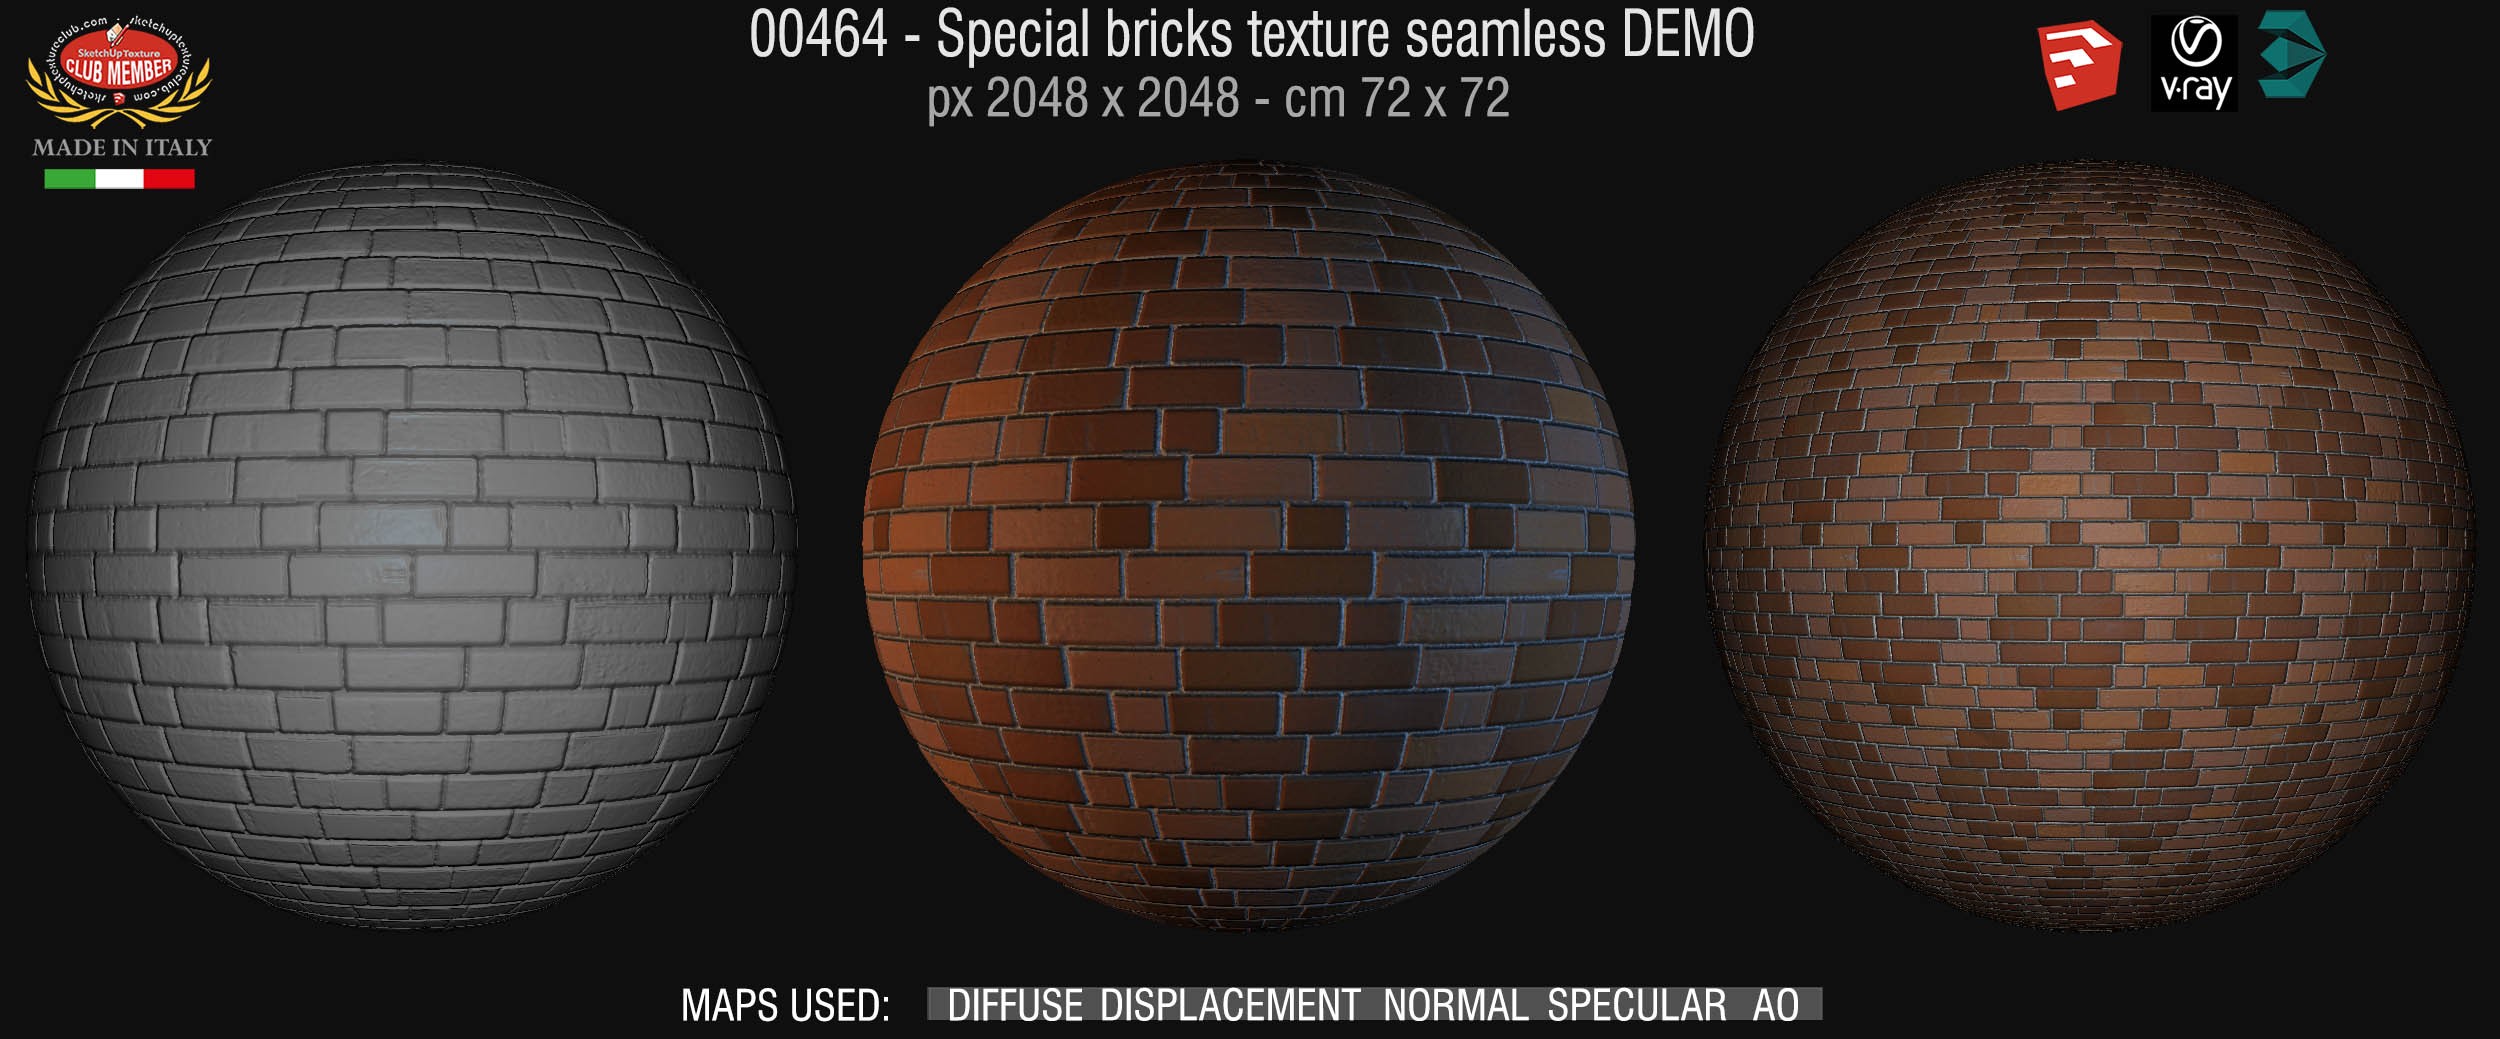 00464 Special bricks texture seamless + maps DEMO